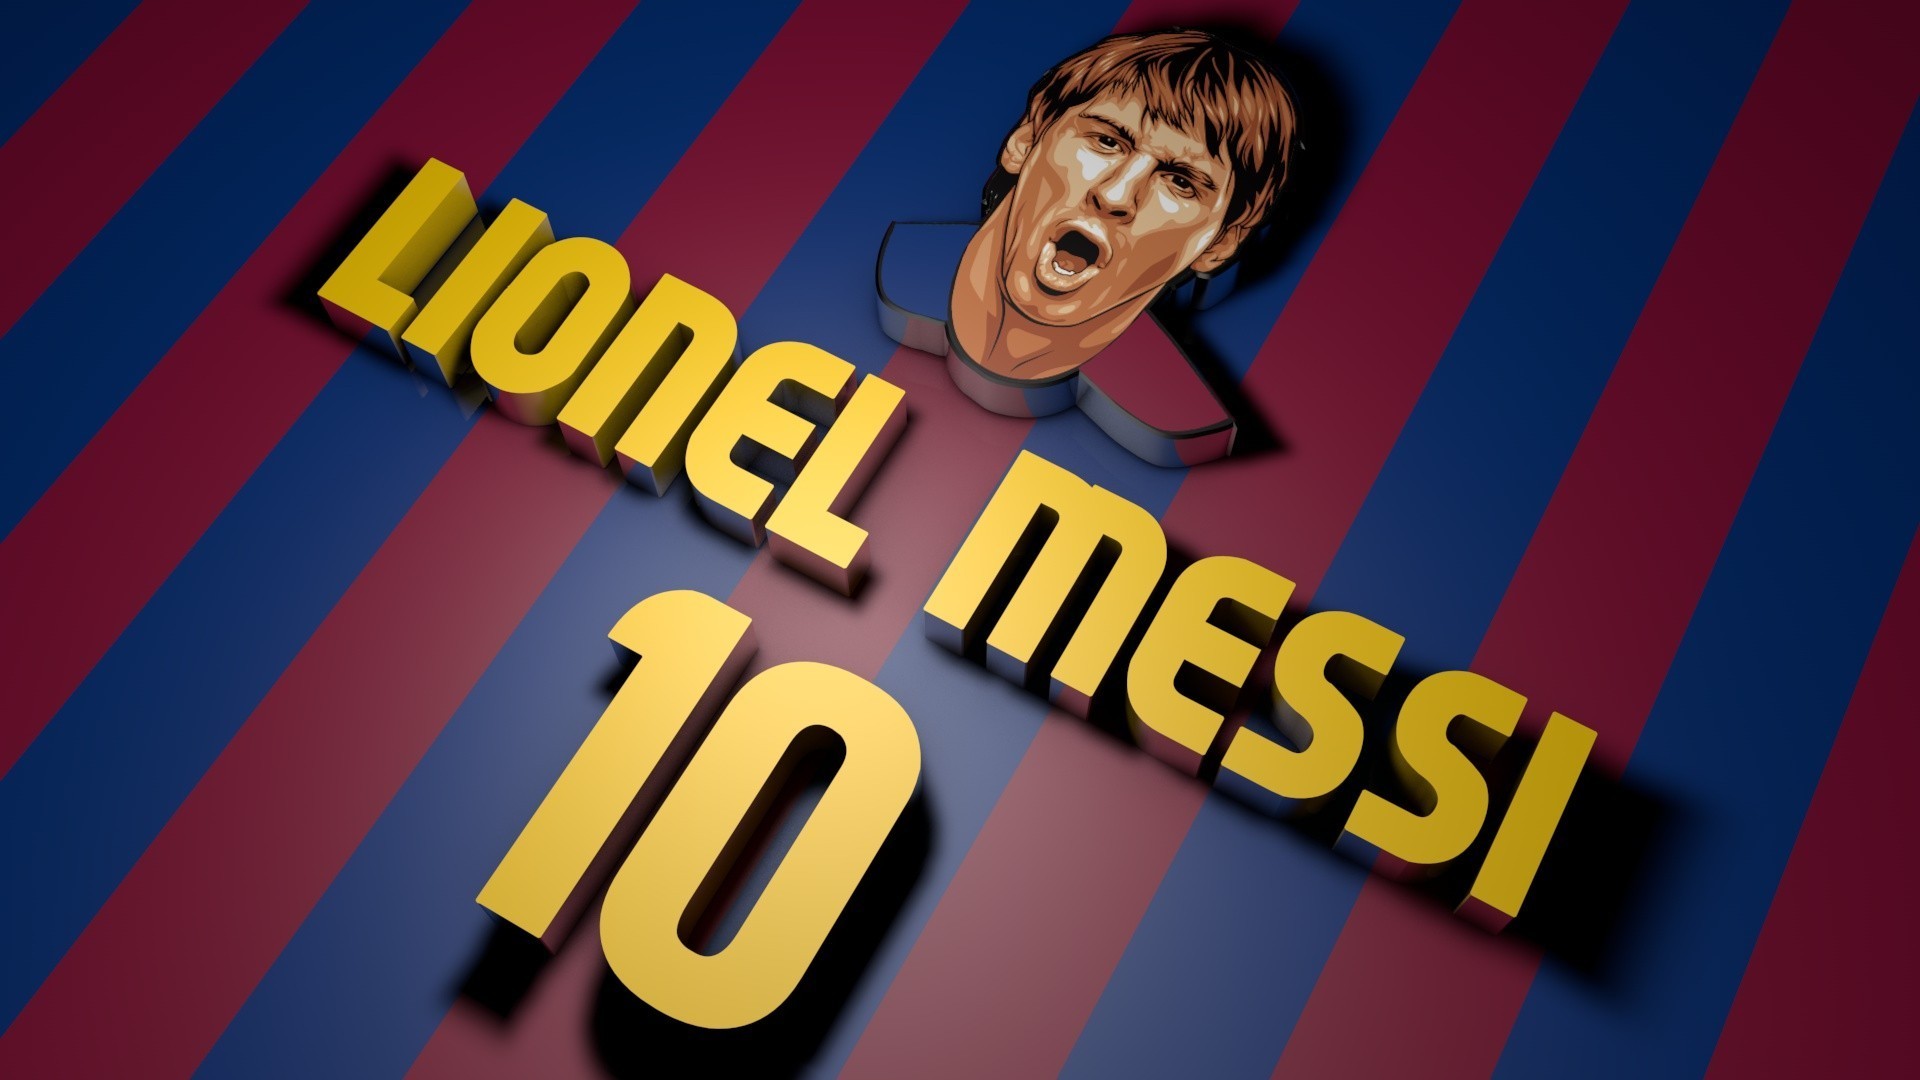 80 hình nền Messi đẹp nhất mọi thời đại full HD